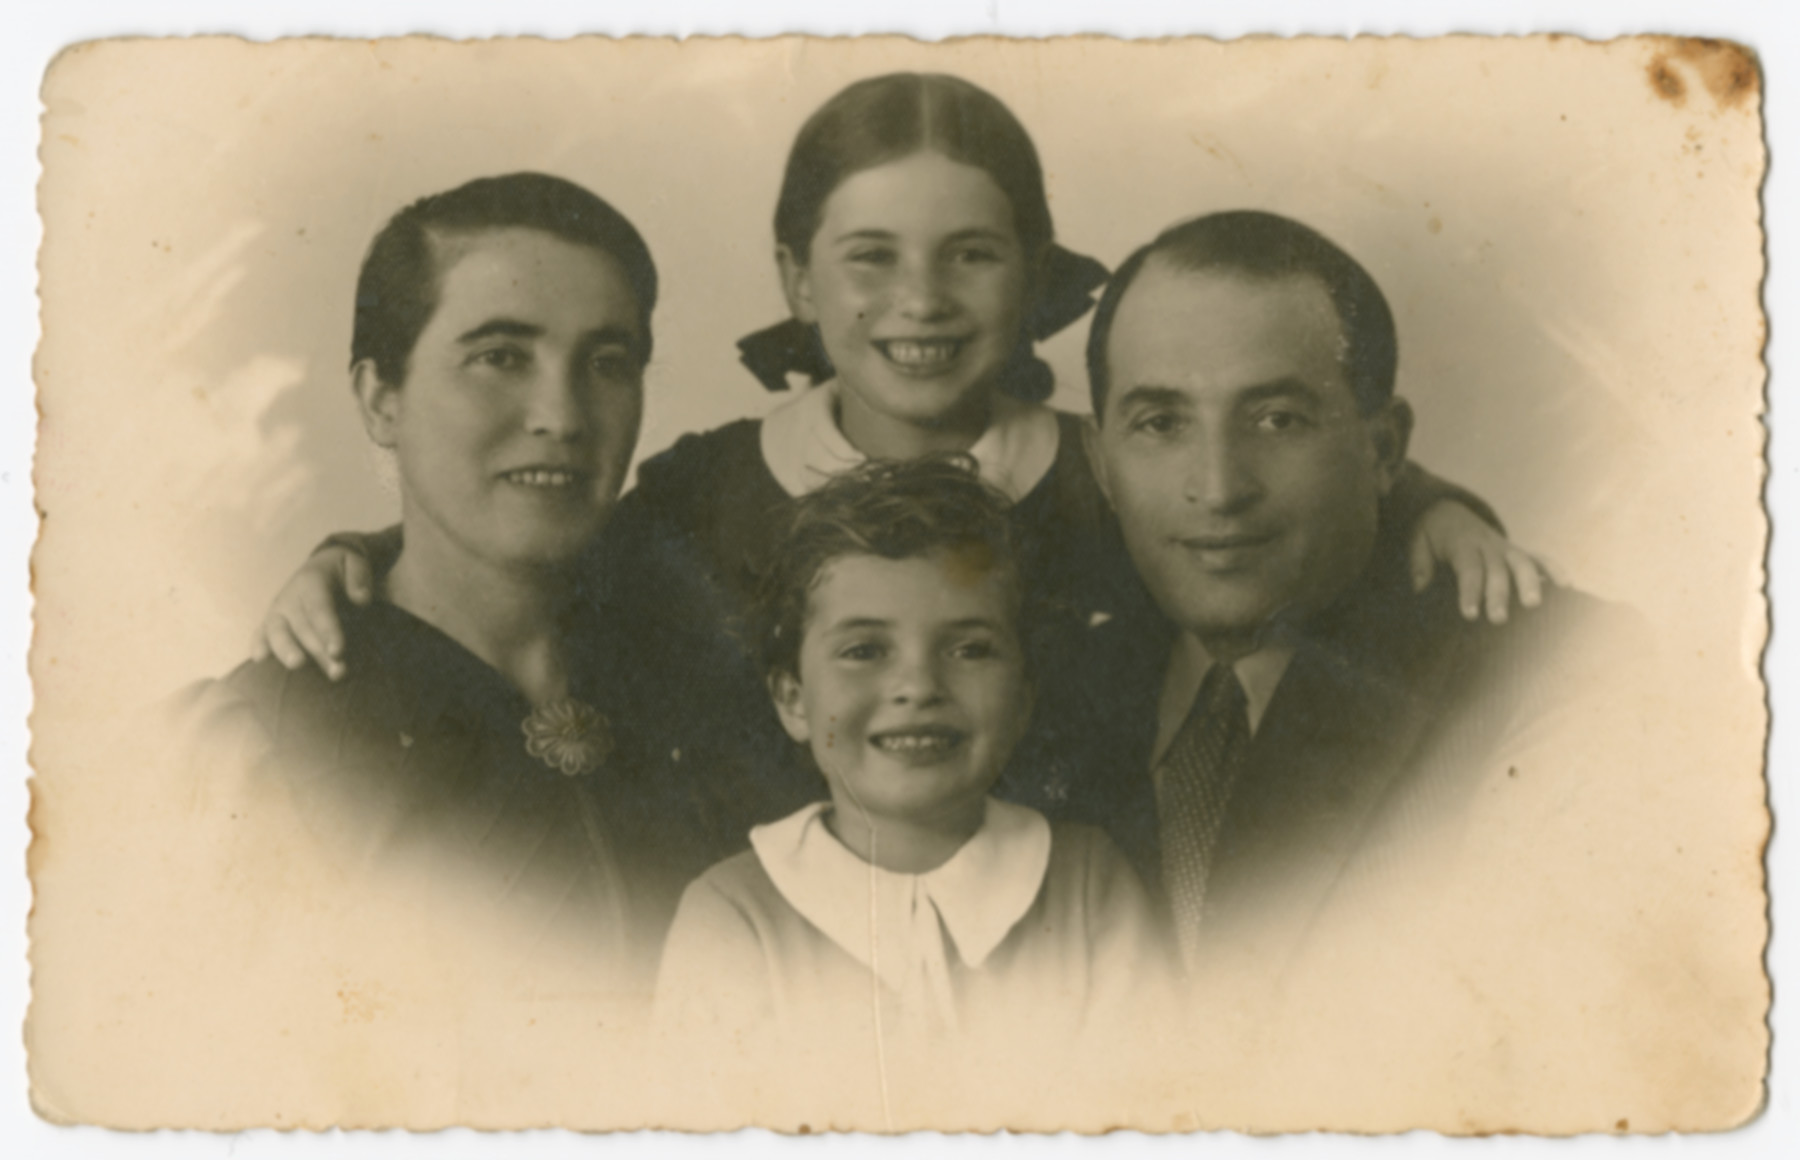 Studio portrait of the Preskowski family in Palestine.

Pictured are Chana, Jacob, Bella and Lea.